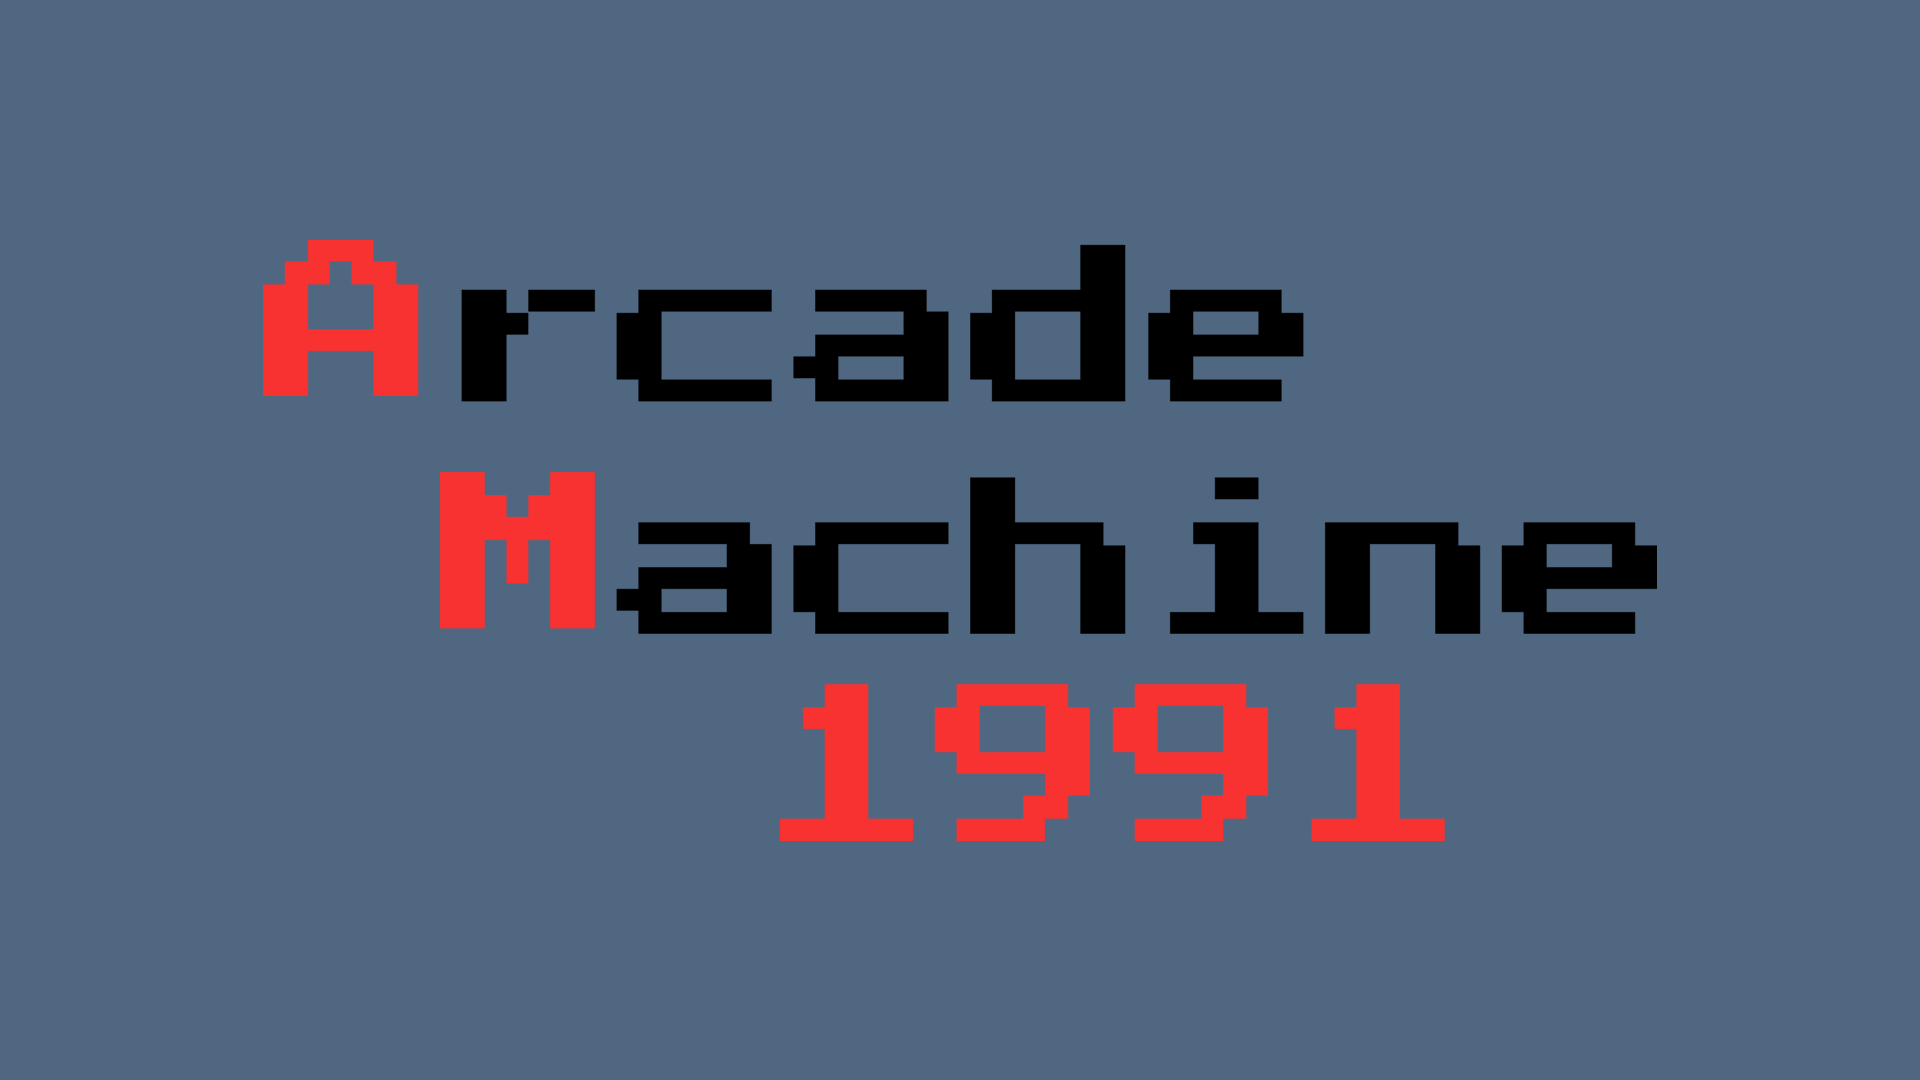 Arcade Machine 1991